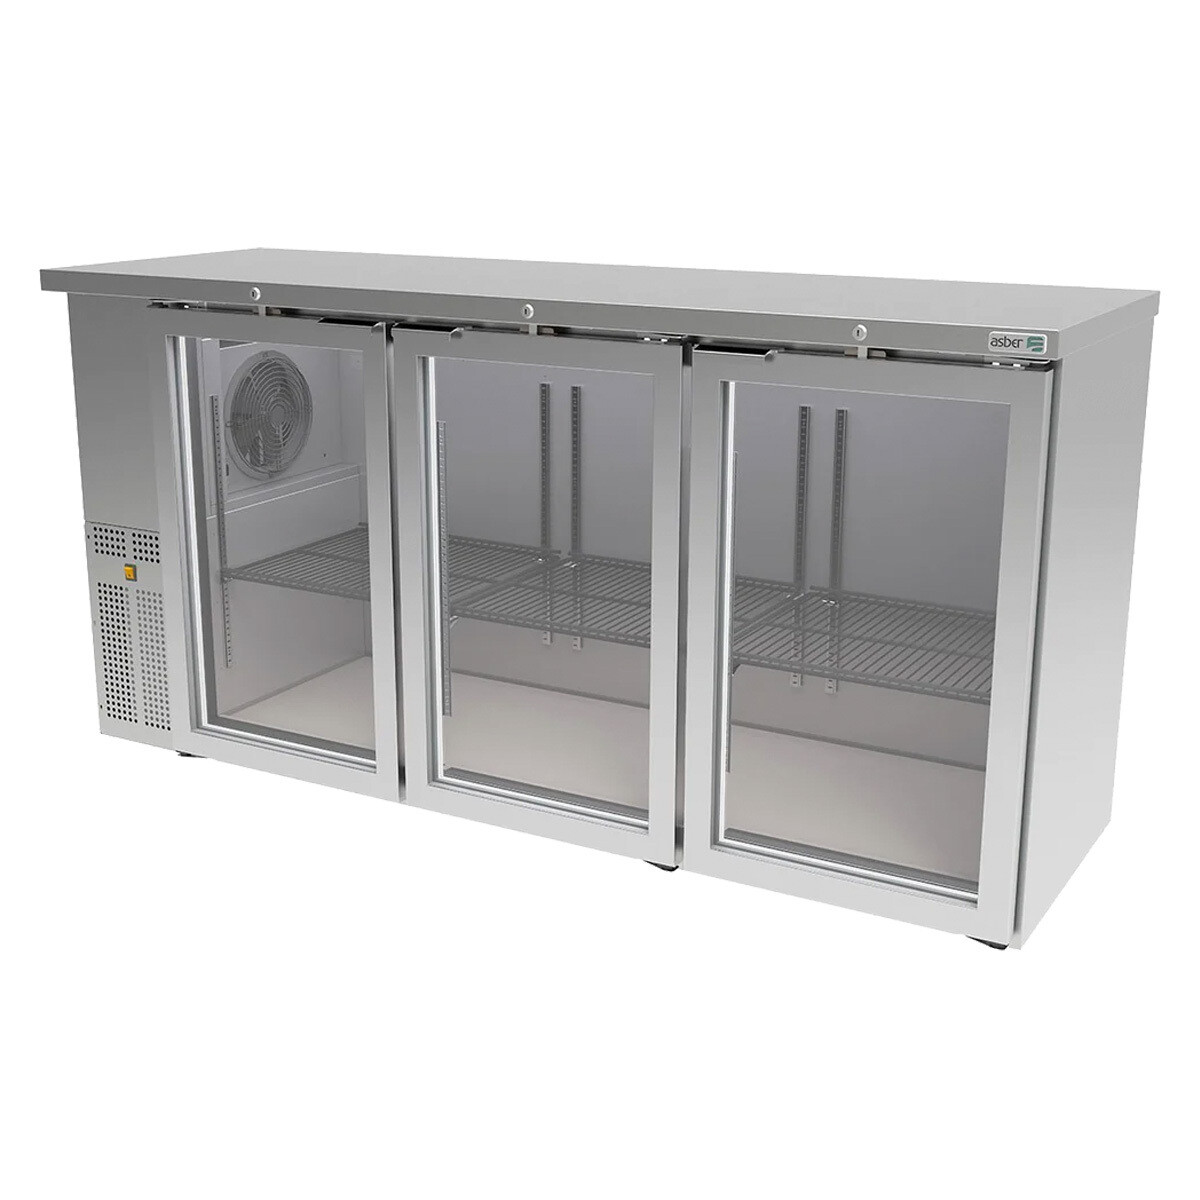 Refrigerador Contra-Barra Asber 3 Puertas Solidas con Cerradura en Puertas y Luz Interior ABBC-24-72-G HC, Material: Acero Inoxidable